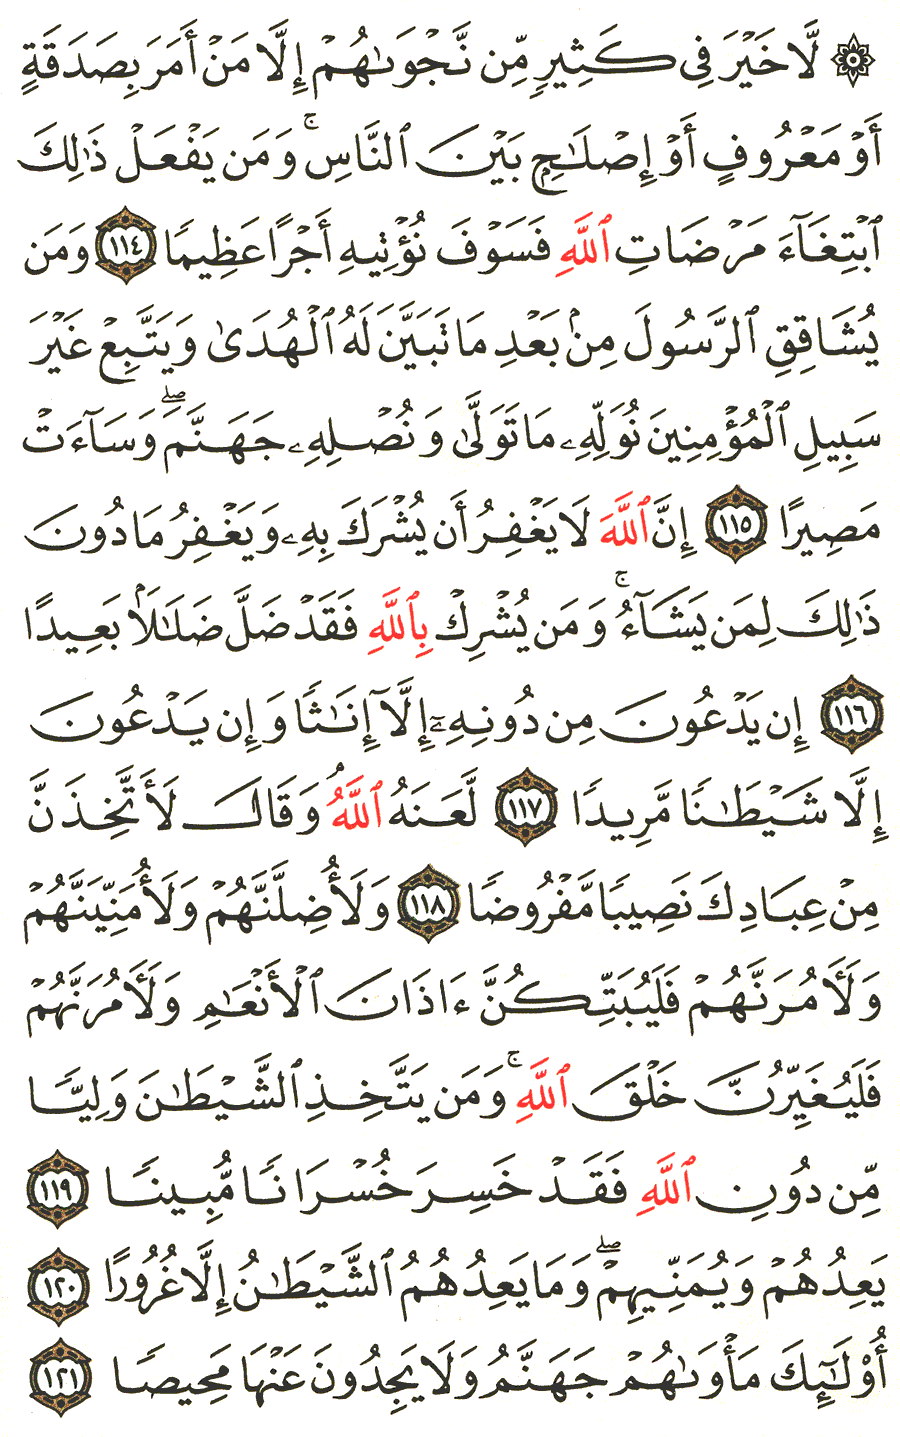 الصفحة 97 من القرآن الكريم